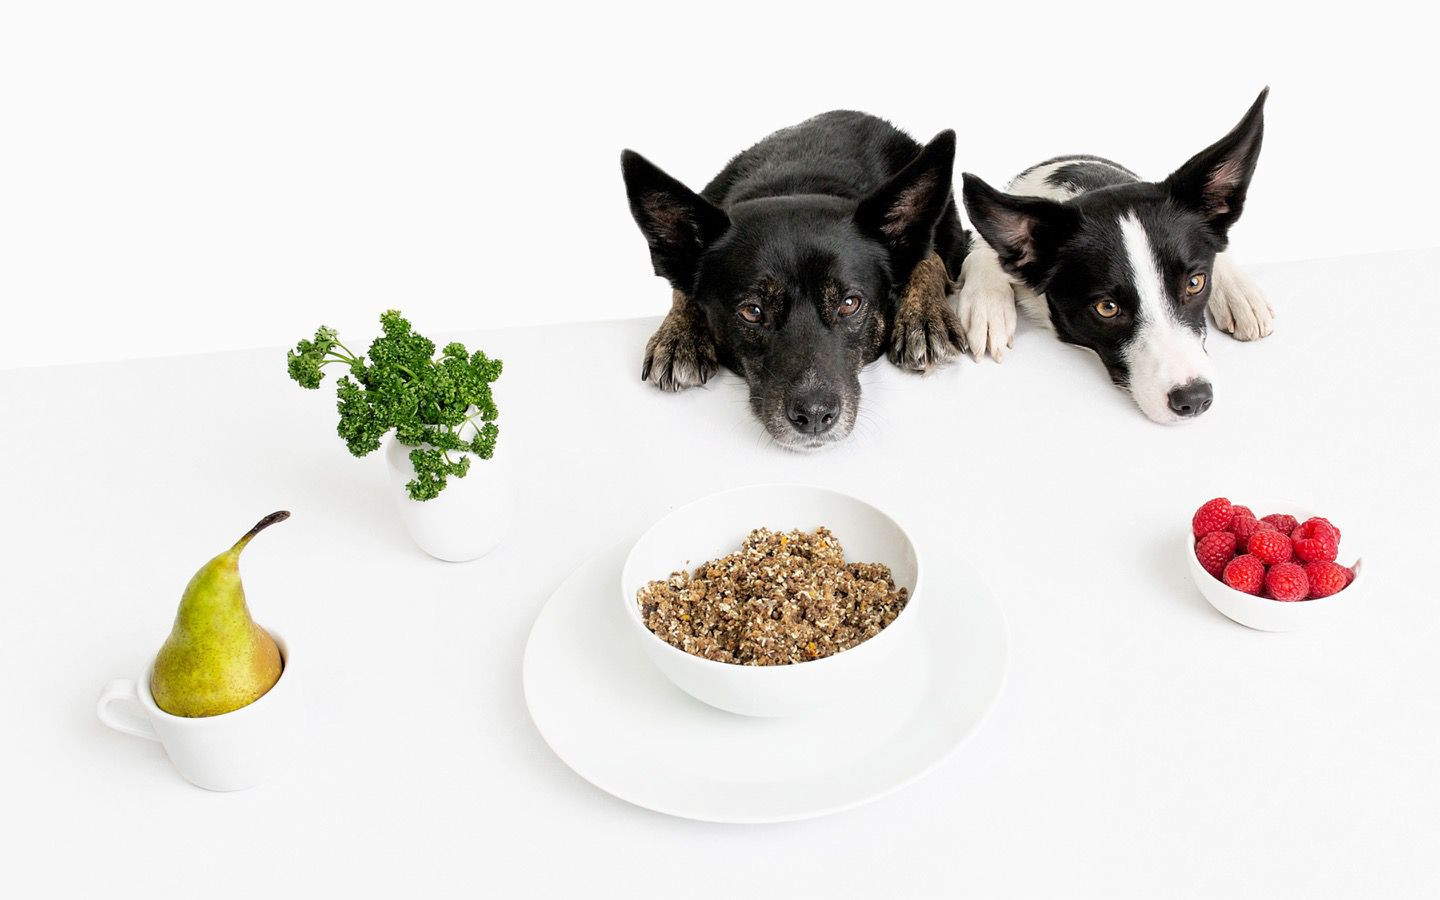 ROCKETO sustainable dog food